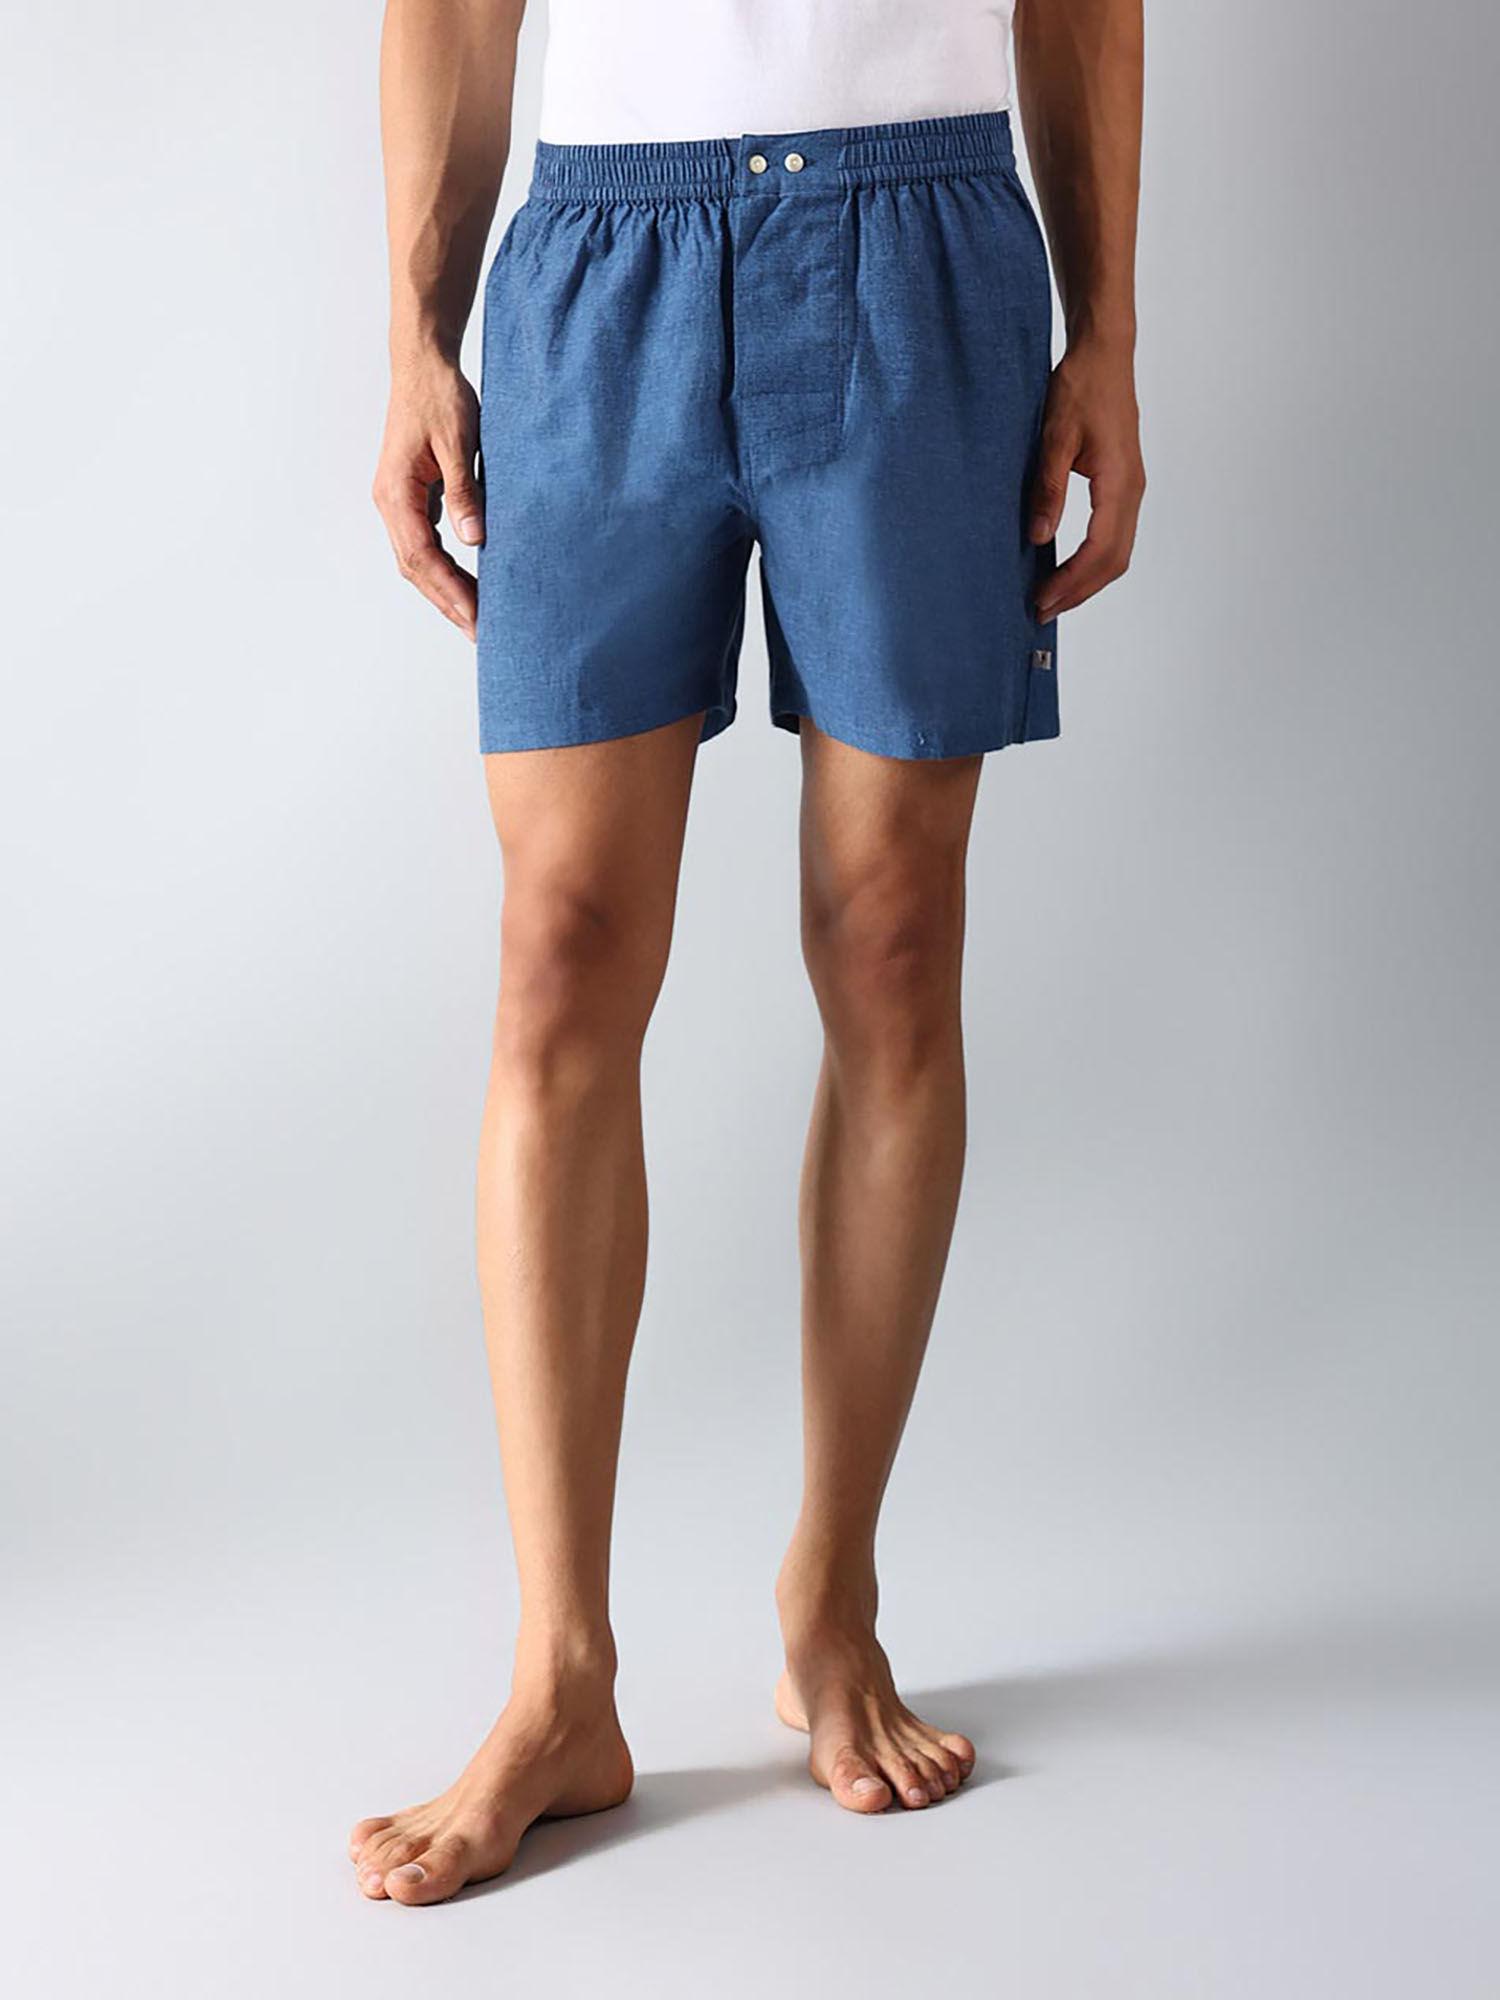 light blue cotton boxer shorts